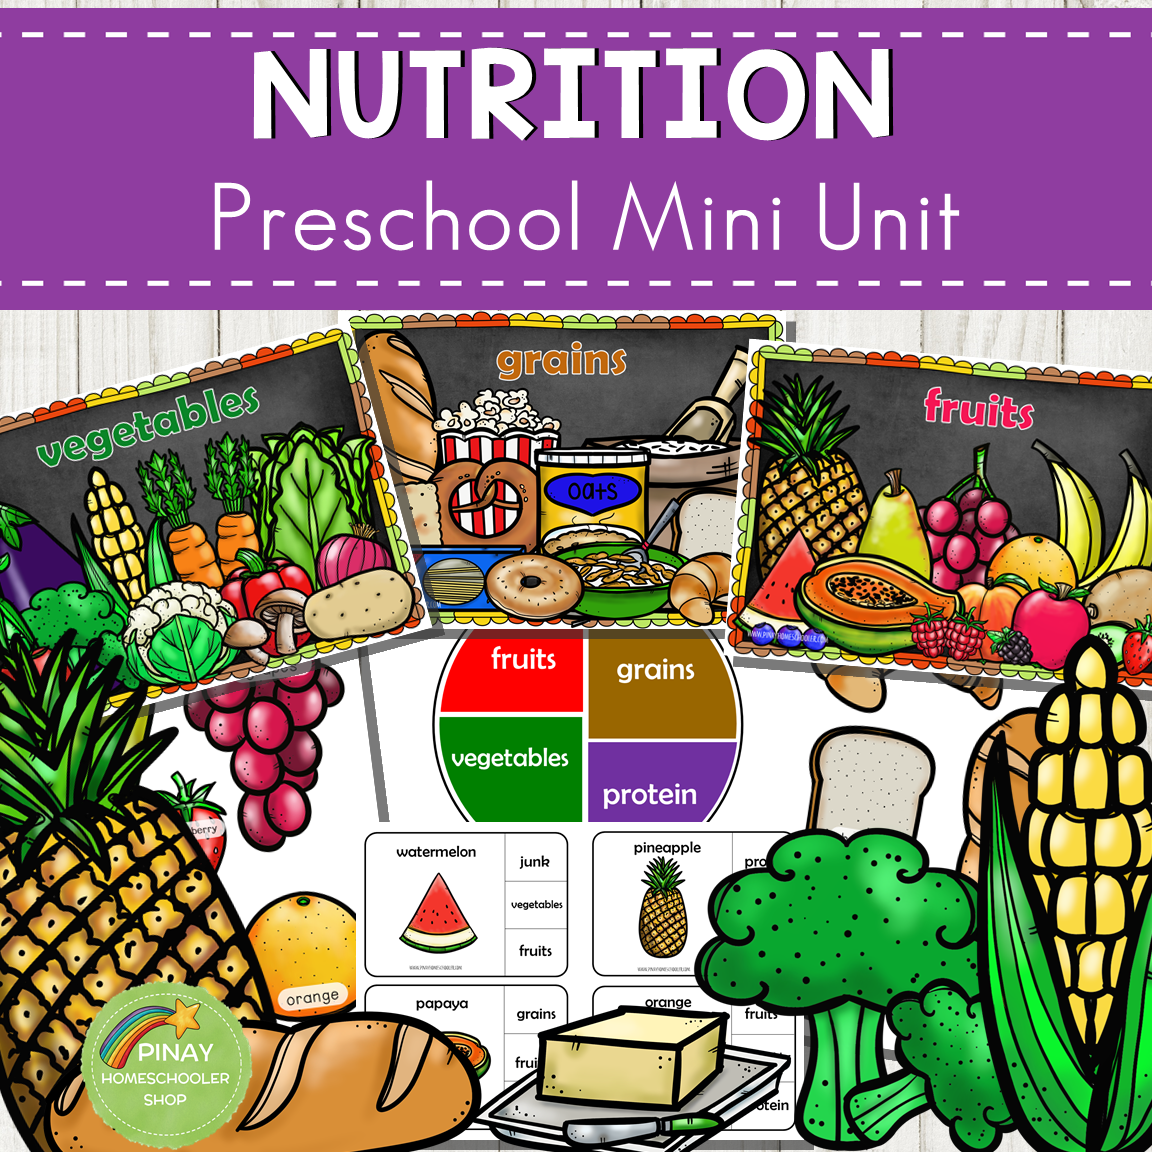 Nutrition Preschool and Kindergarten Mini Unit Activities